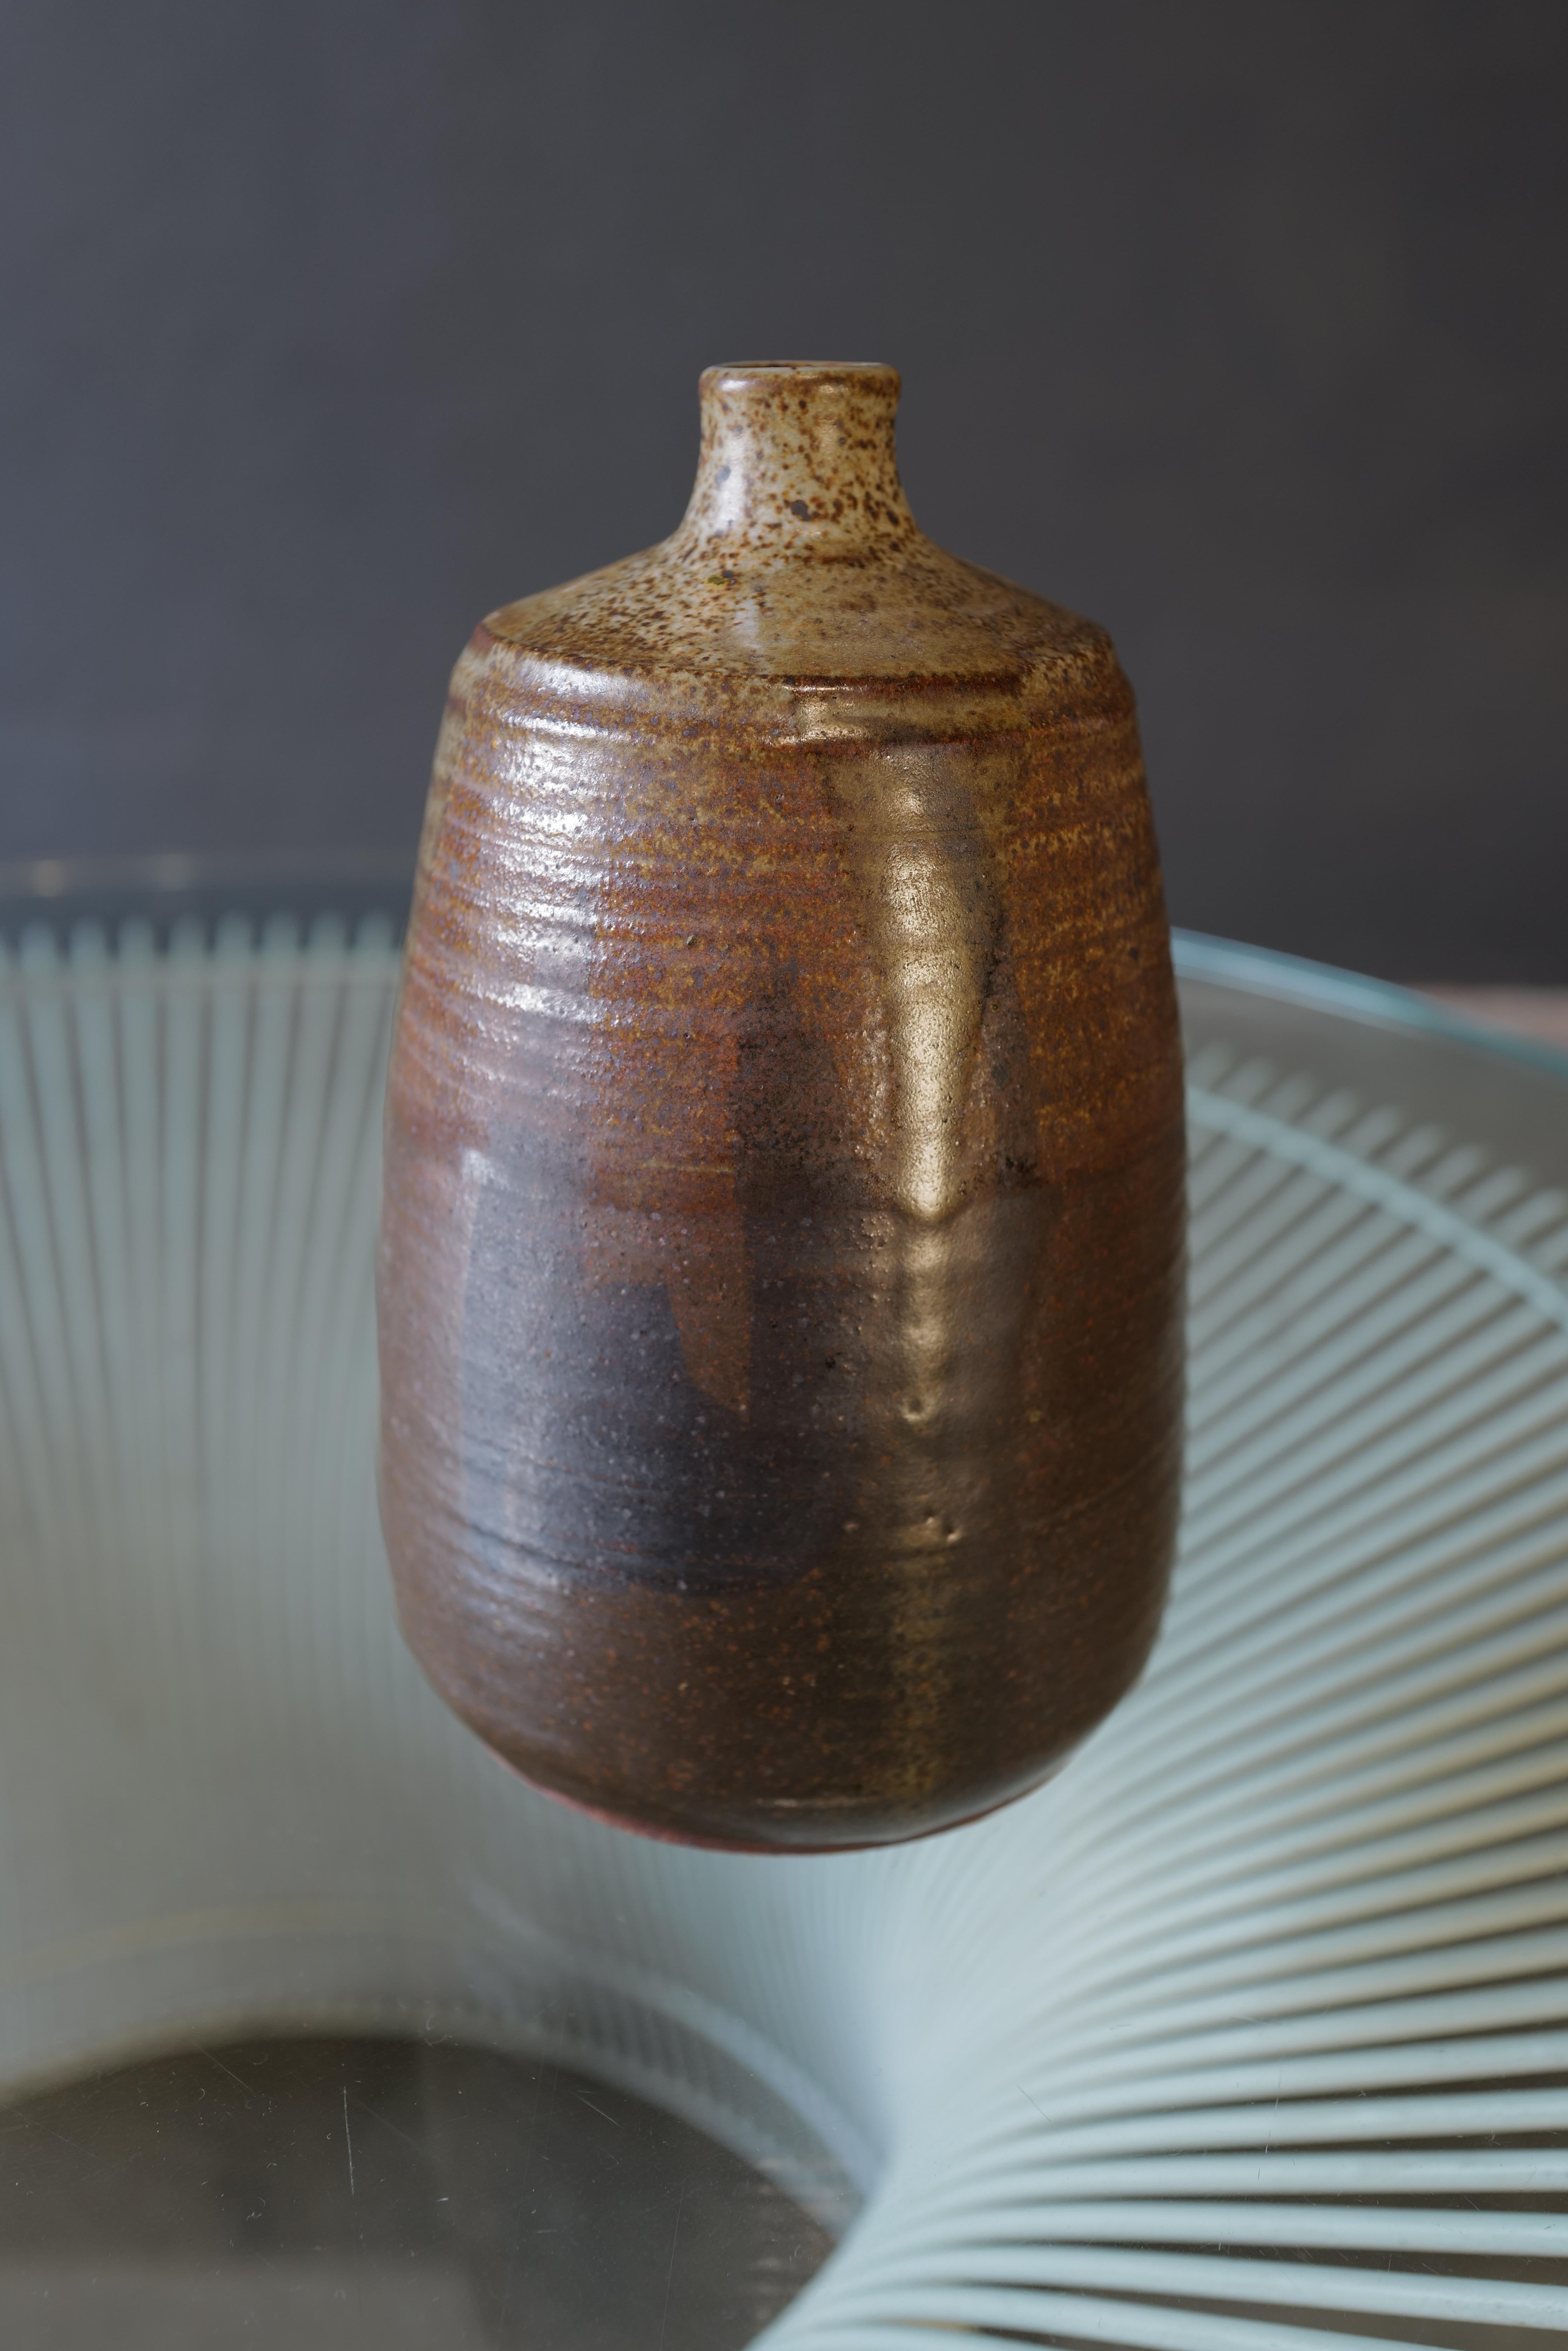 Erleben Sie die zeitlose Schönheit der japanischen Handwerkskunst mit dieser exquisiten Keramikvase. Diese Vase wird in sorgfältiger Handarbeit von geschickten Kunsthandwerkern hergestellt und ist ein Beispiel für die reiche künstlerische Tradition